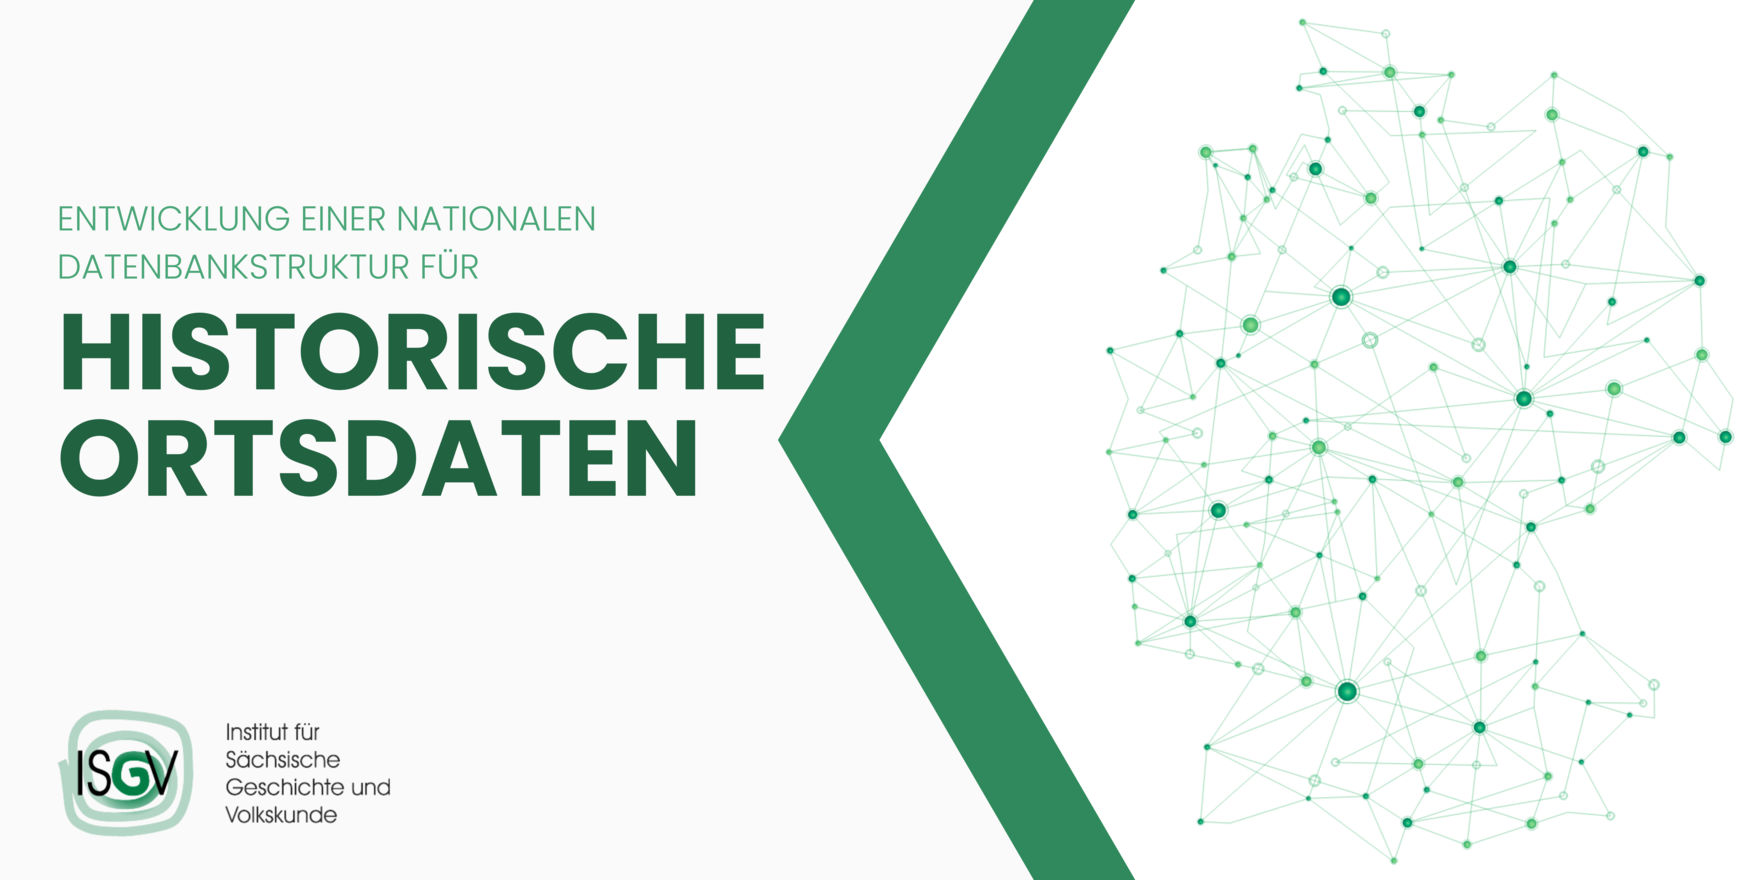 Grafische Elemente in Grün mit dem Text "Entwicklung einer nationalen Datenbankstruktur für historische Ortsdaten", dem Logo des ISGV, des Instituts für Sächsische Geschichte und Volkskunde